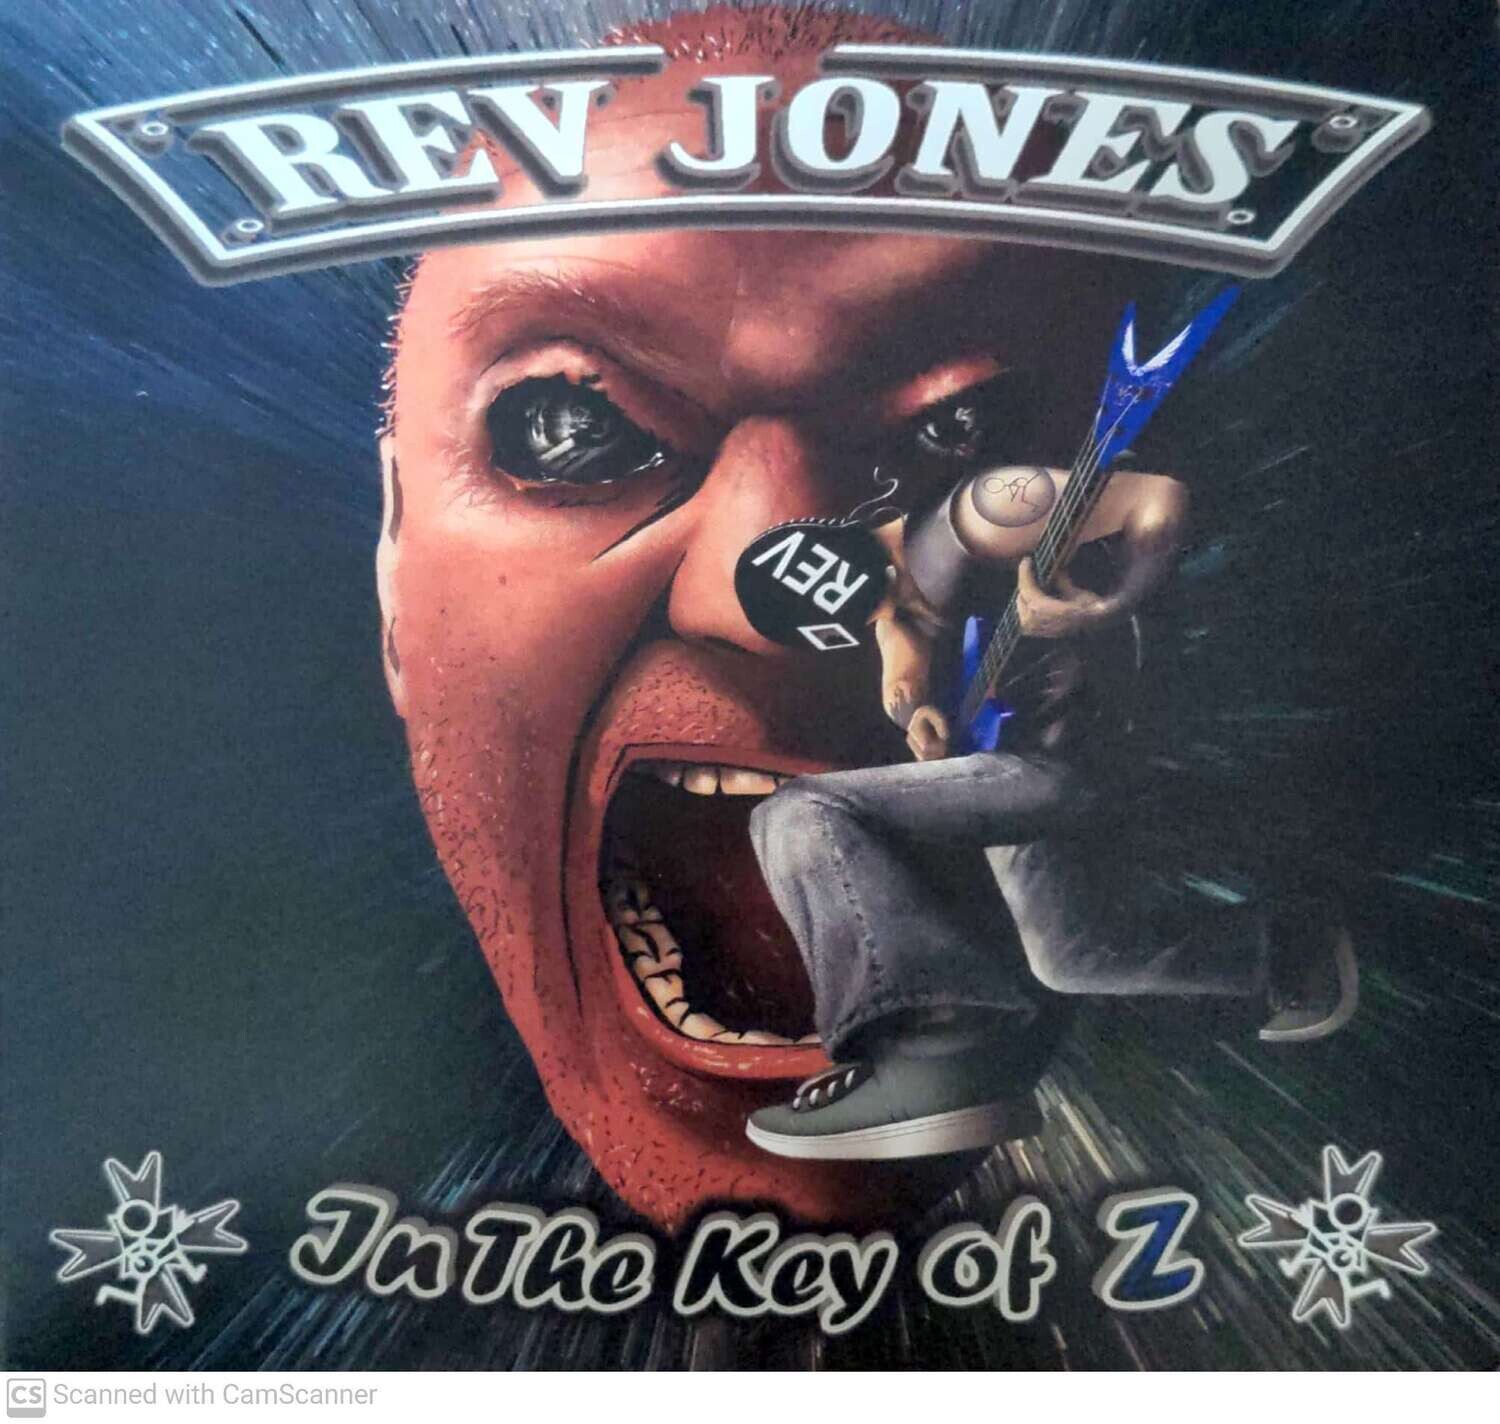 Rev Jones: In the Key of Z